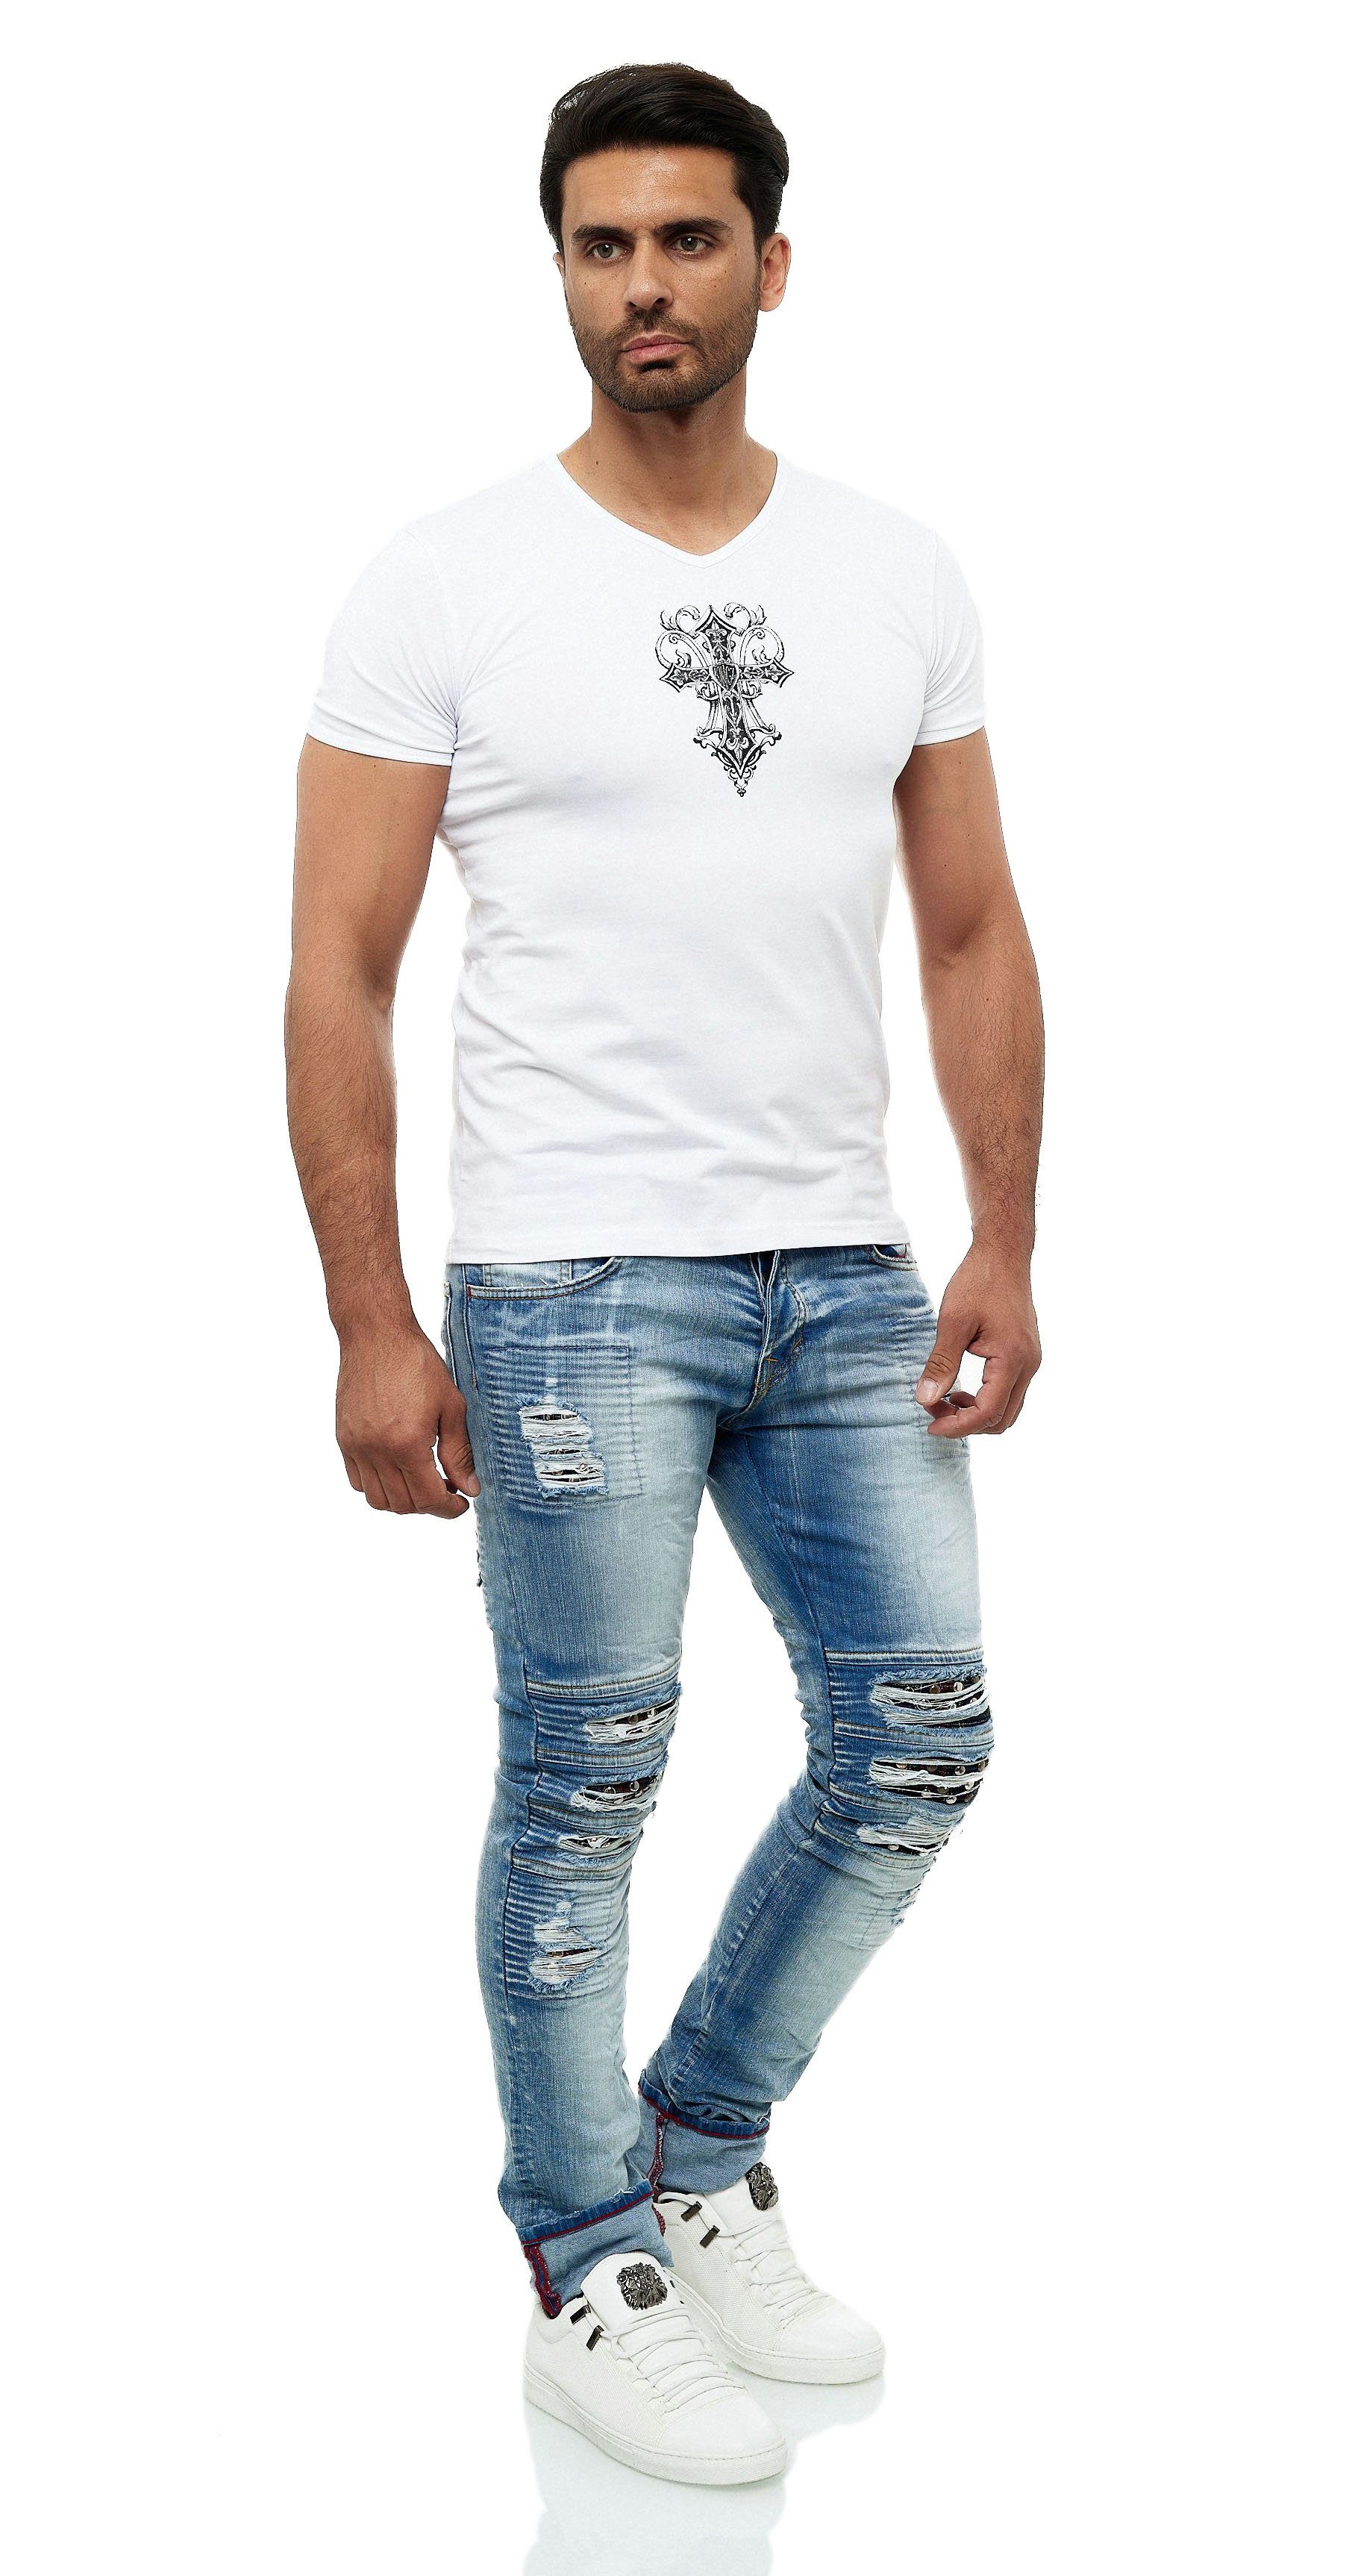 T-Shirt in KINGZ ausgefallenem Design weiß-silberfarben